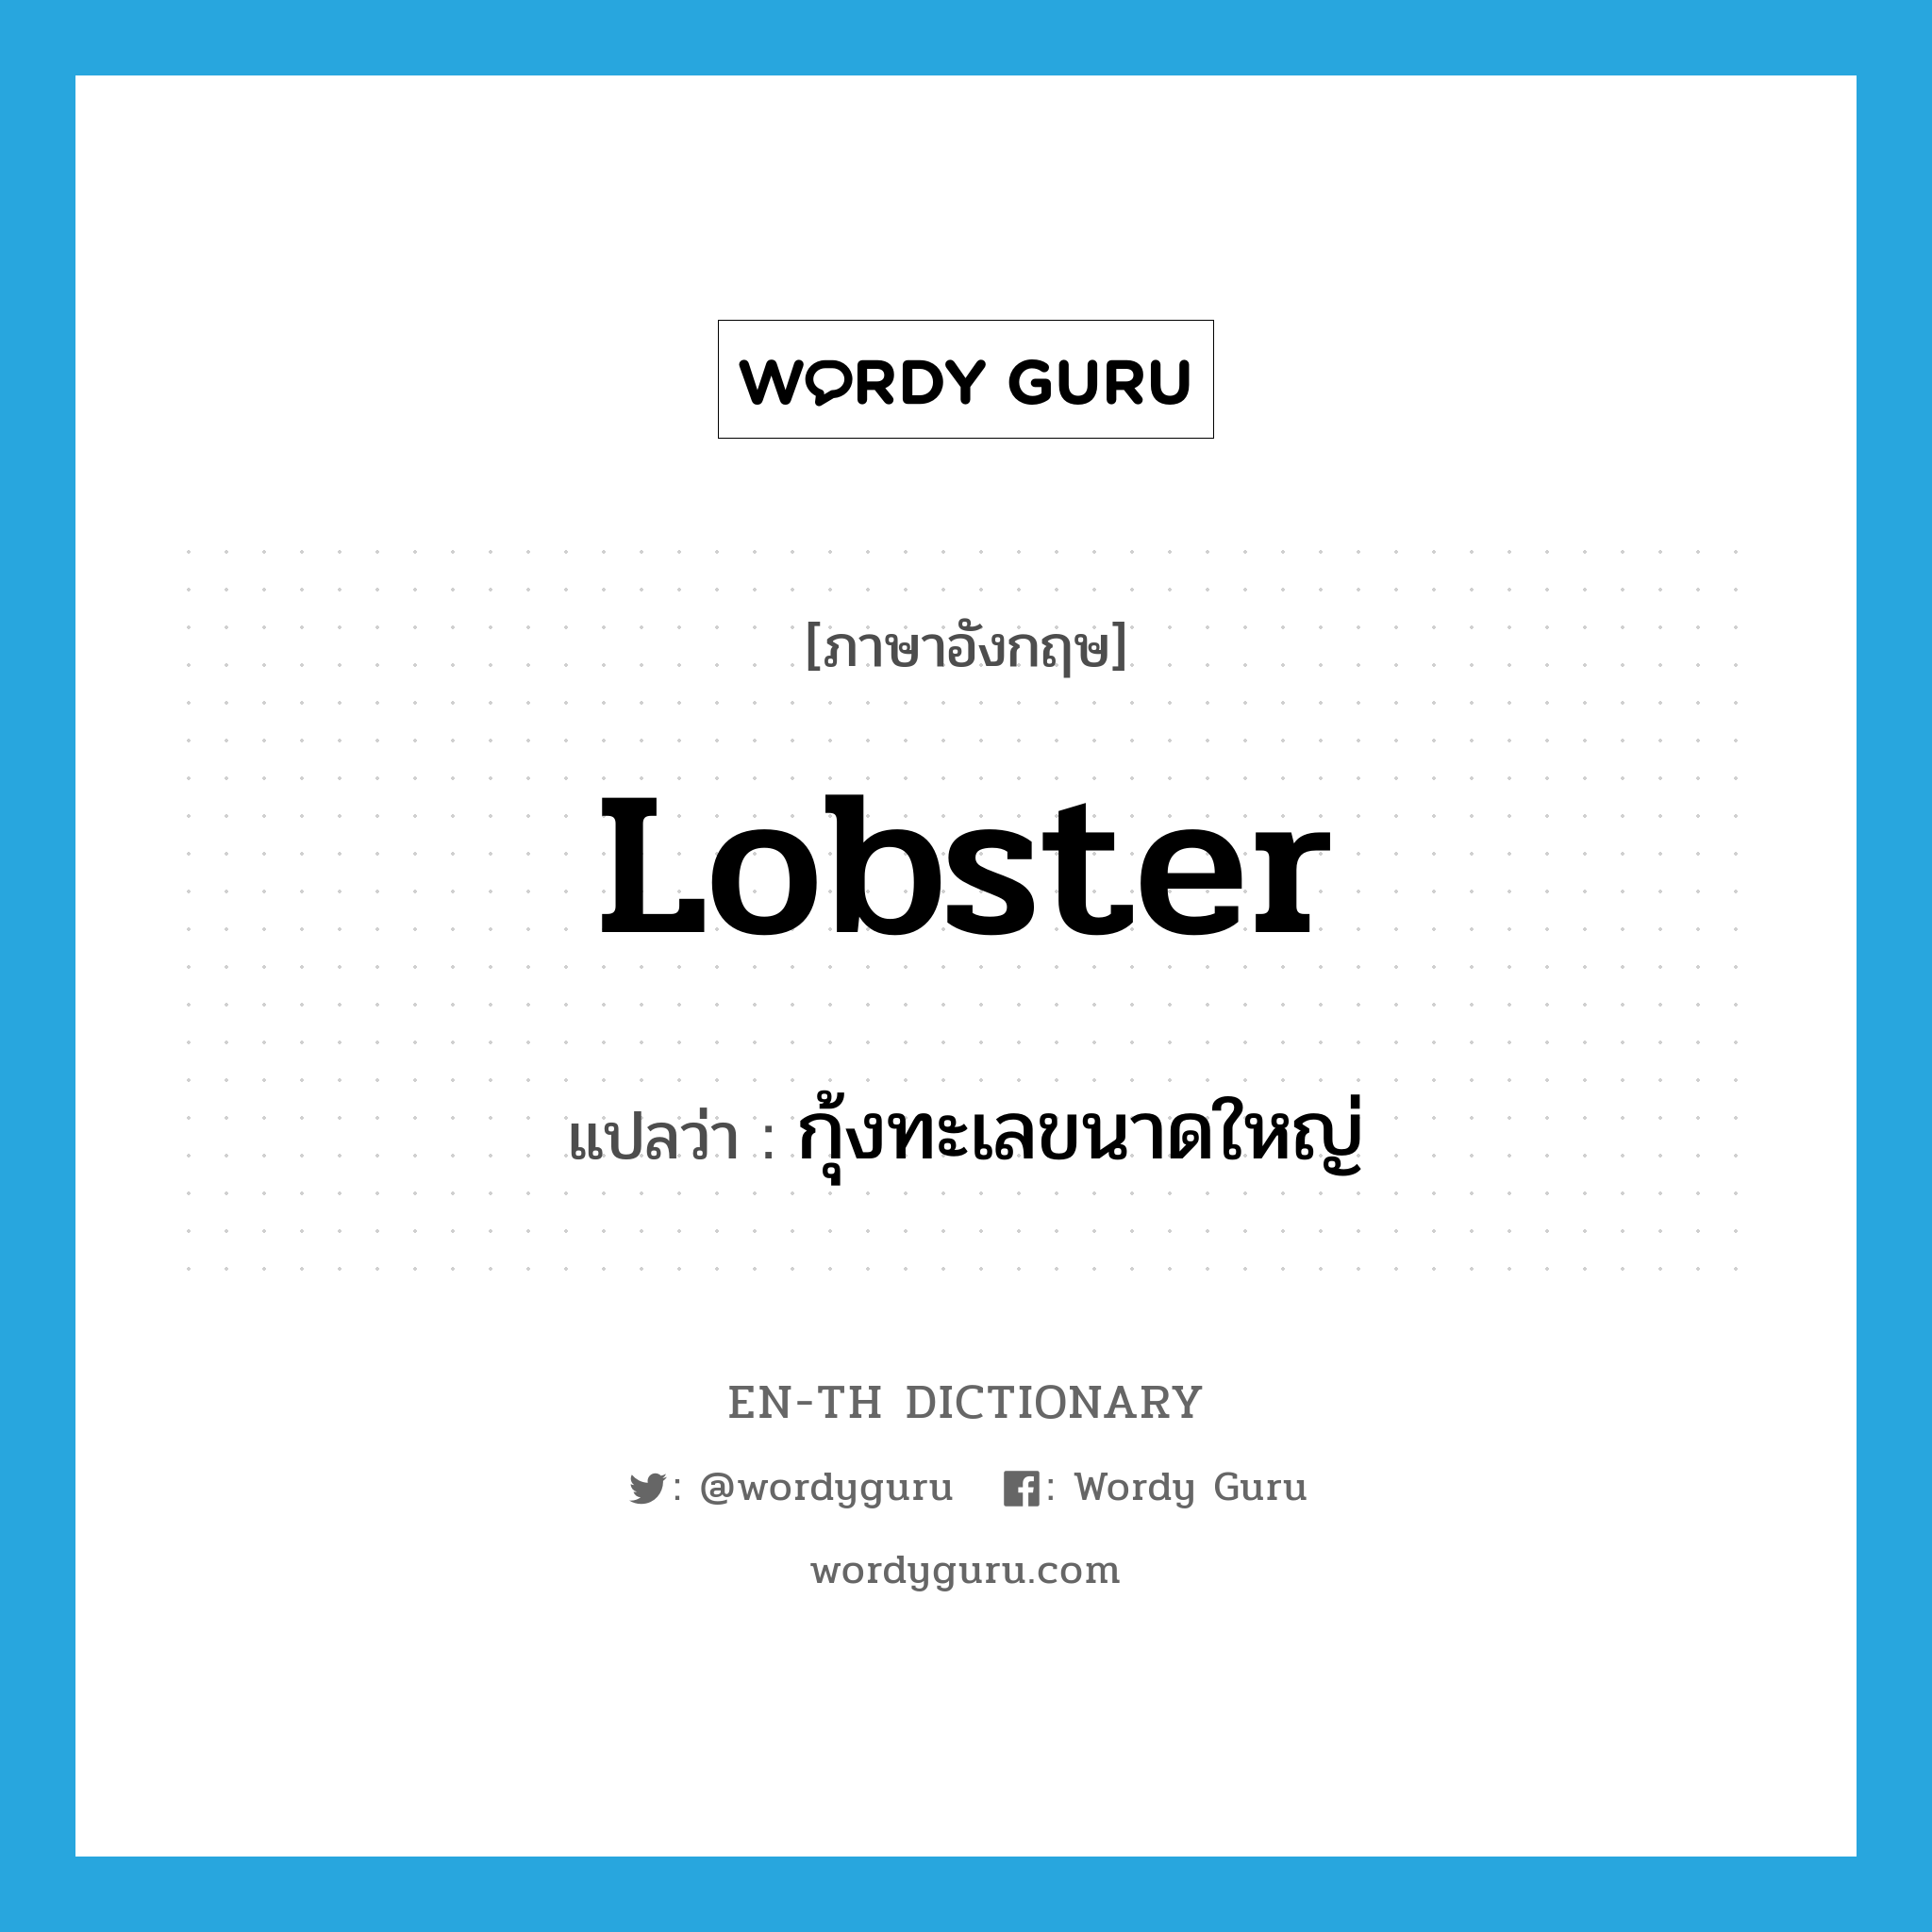 กุ้งทะเลขนาดใหญ่ ภาษาอังกฤษ?, คำศัพท์ภาษาอังกฤษ กุ้งทะเลขนาดใหญ่ แปลว่า lobster ประเภท N หมวด N